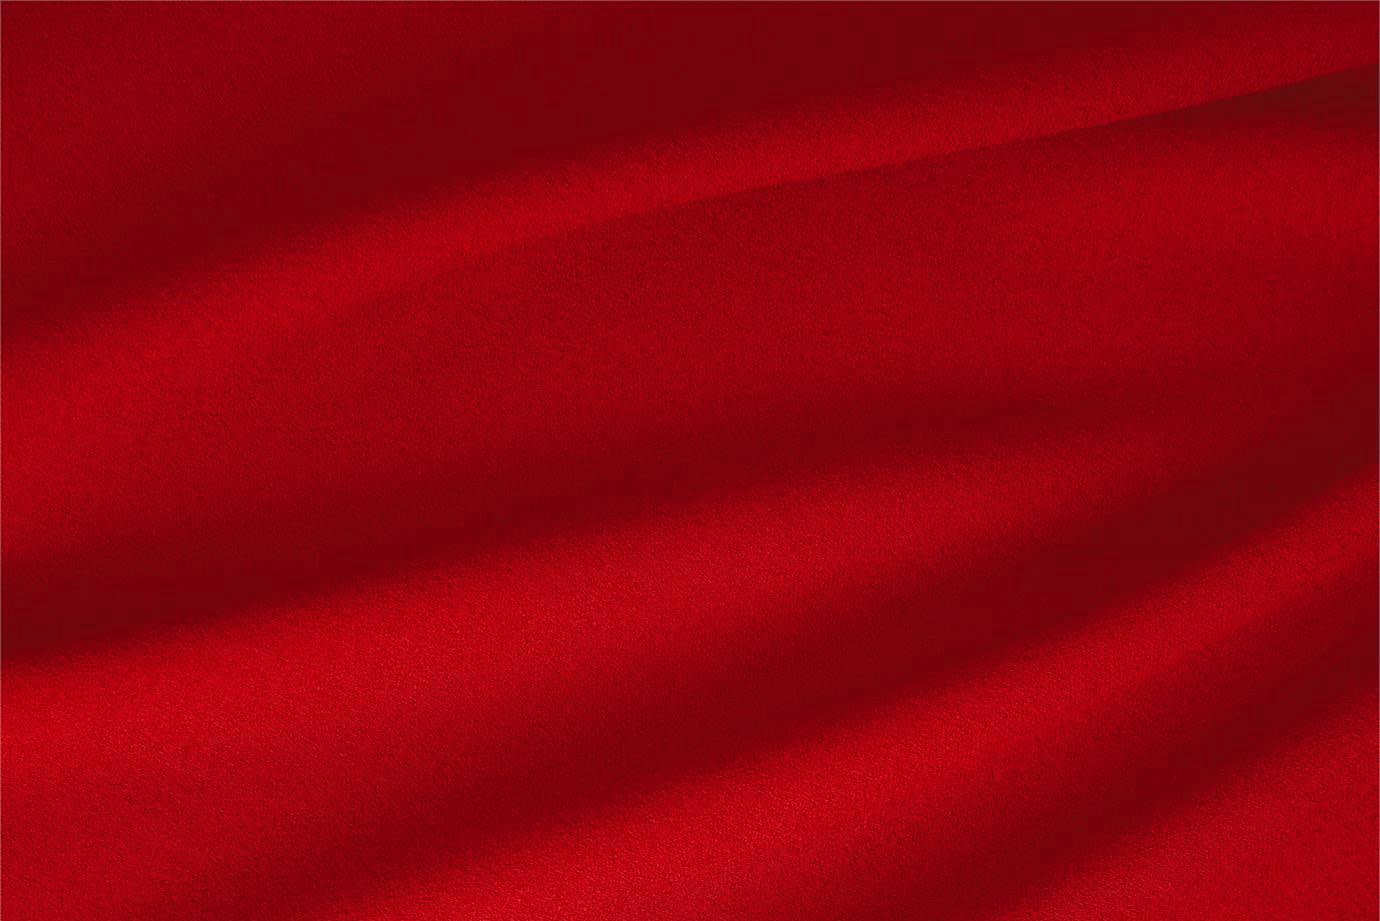 Tessuto Lana Stretch Rosso Fuoco in Lana, Poliestere, Stretch per abbigliamento